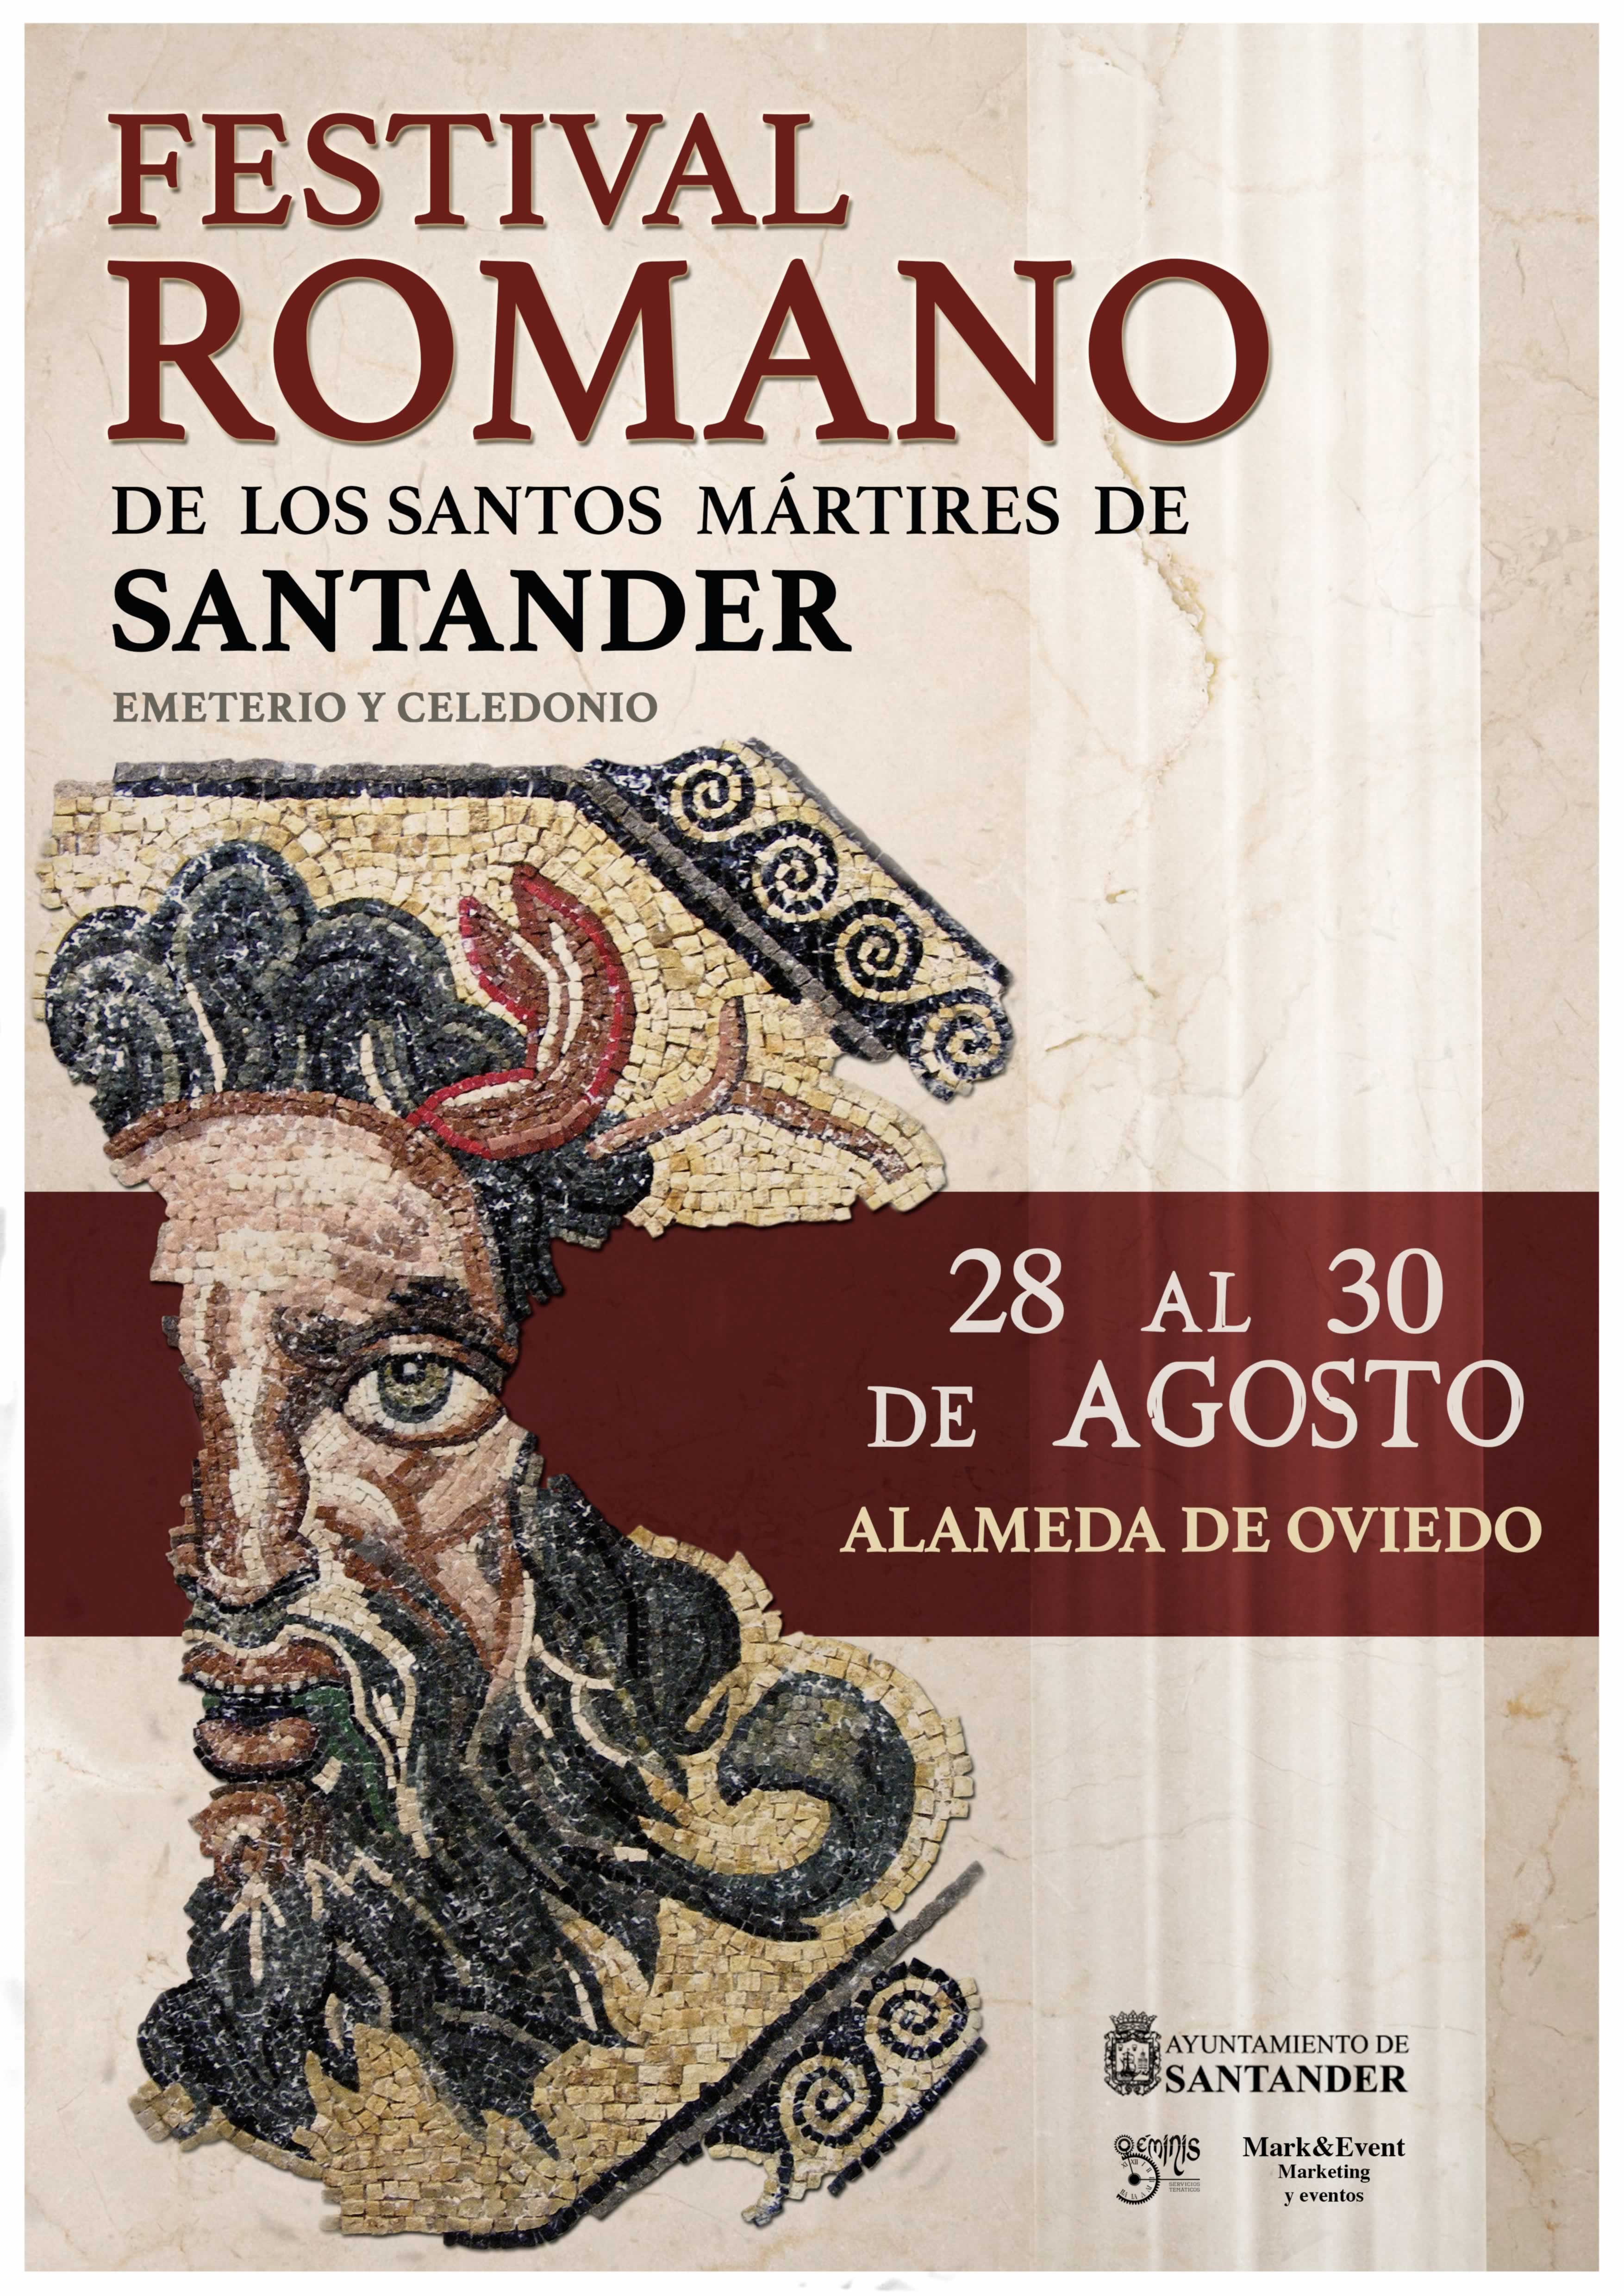 Festival Romano de los Santos Mártires en Santander 2015